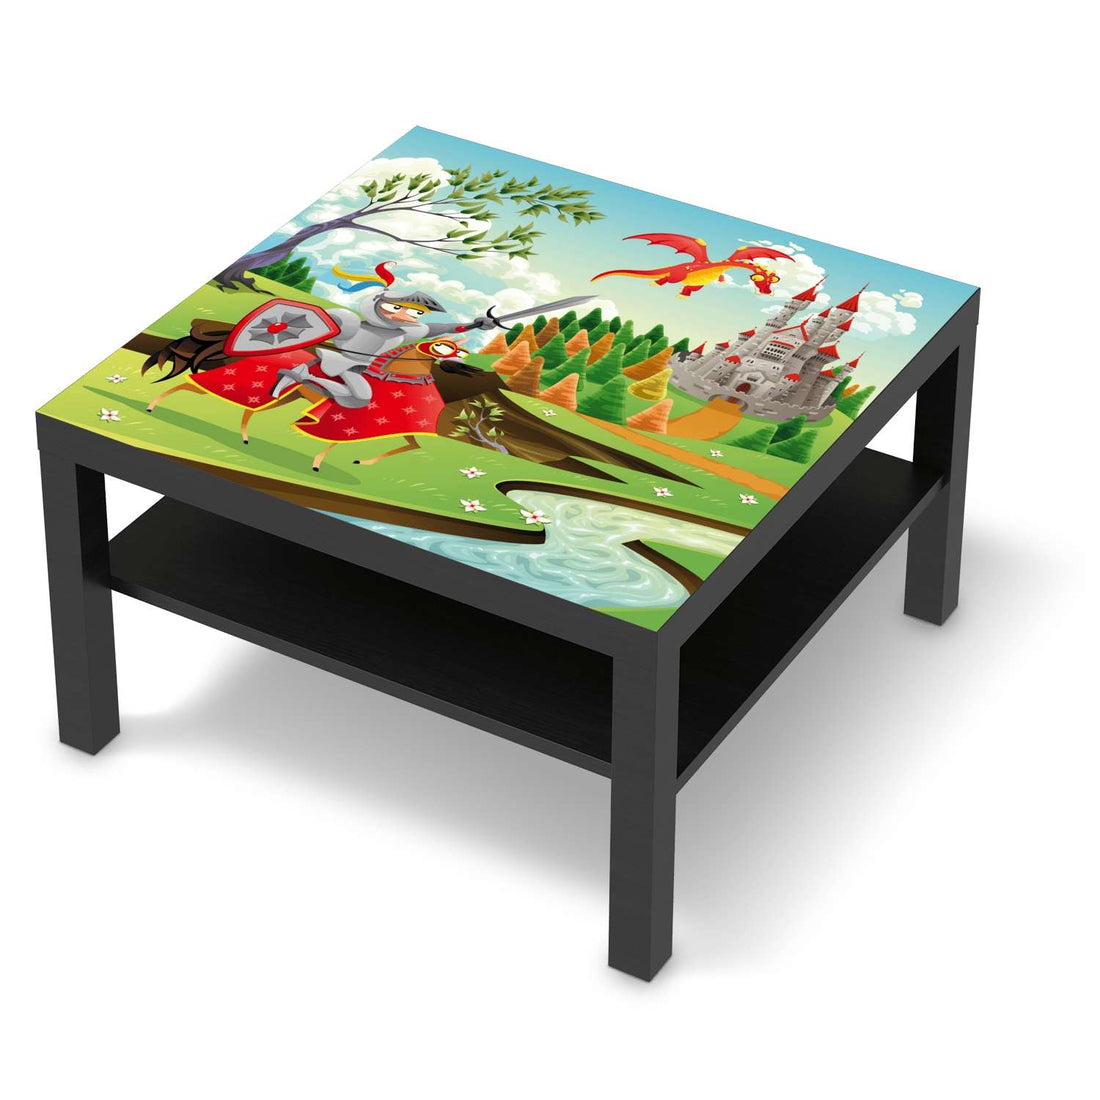 Selbstklebende Folie Fairytale - IKEA Lack Tisch 78x78 cm - schwarz